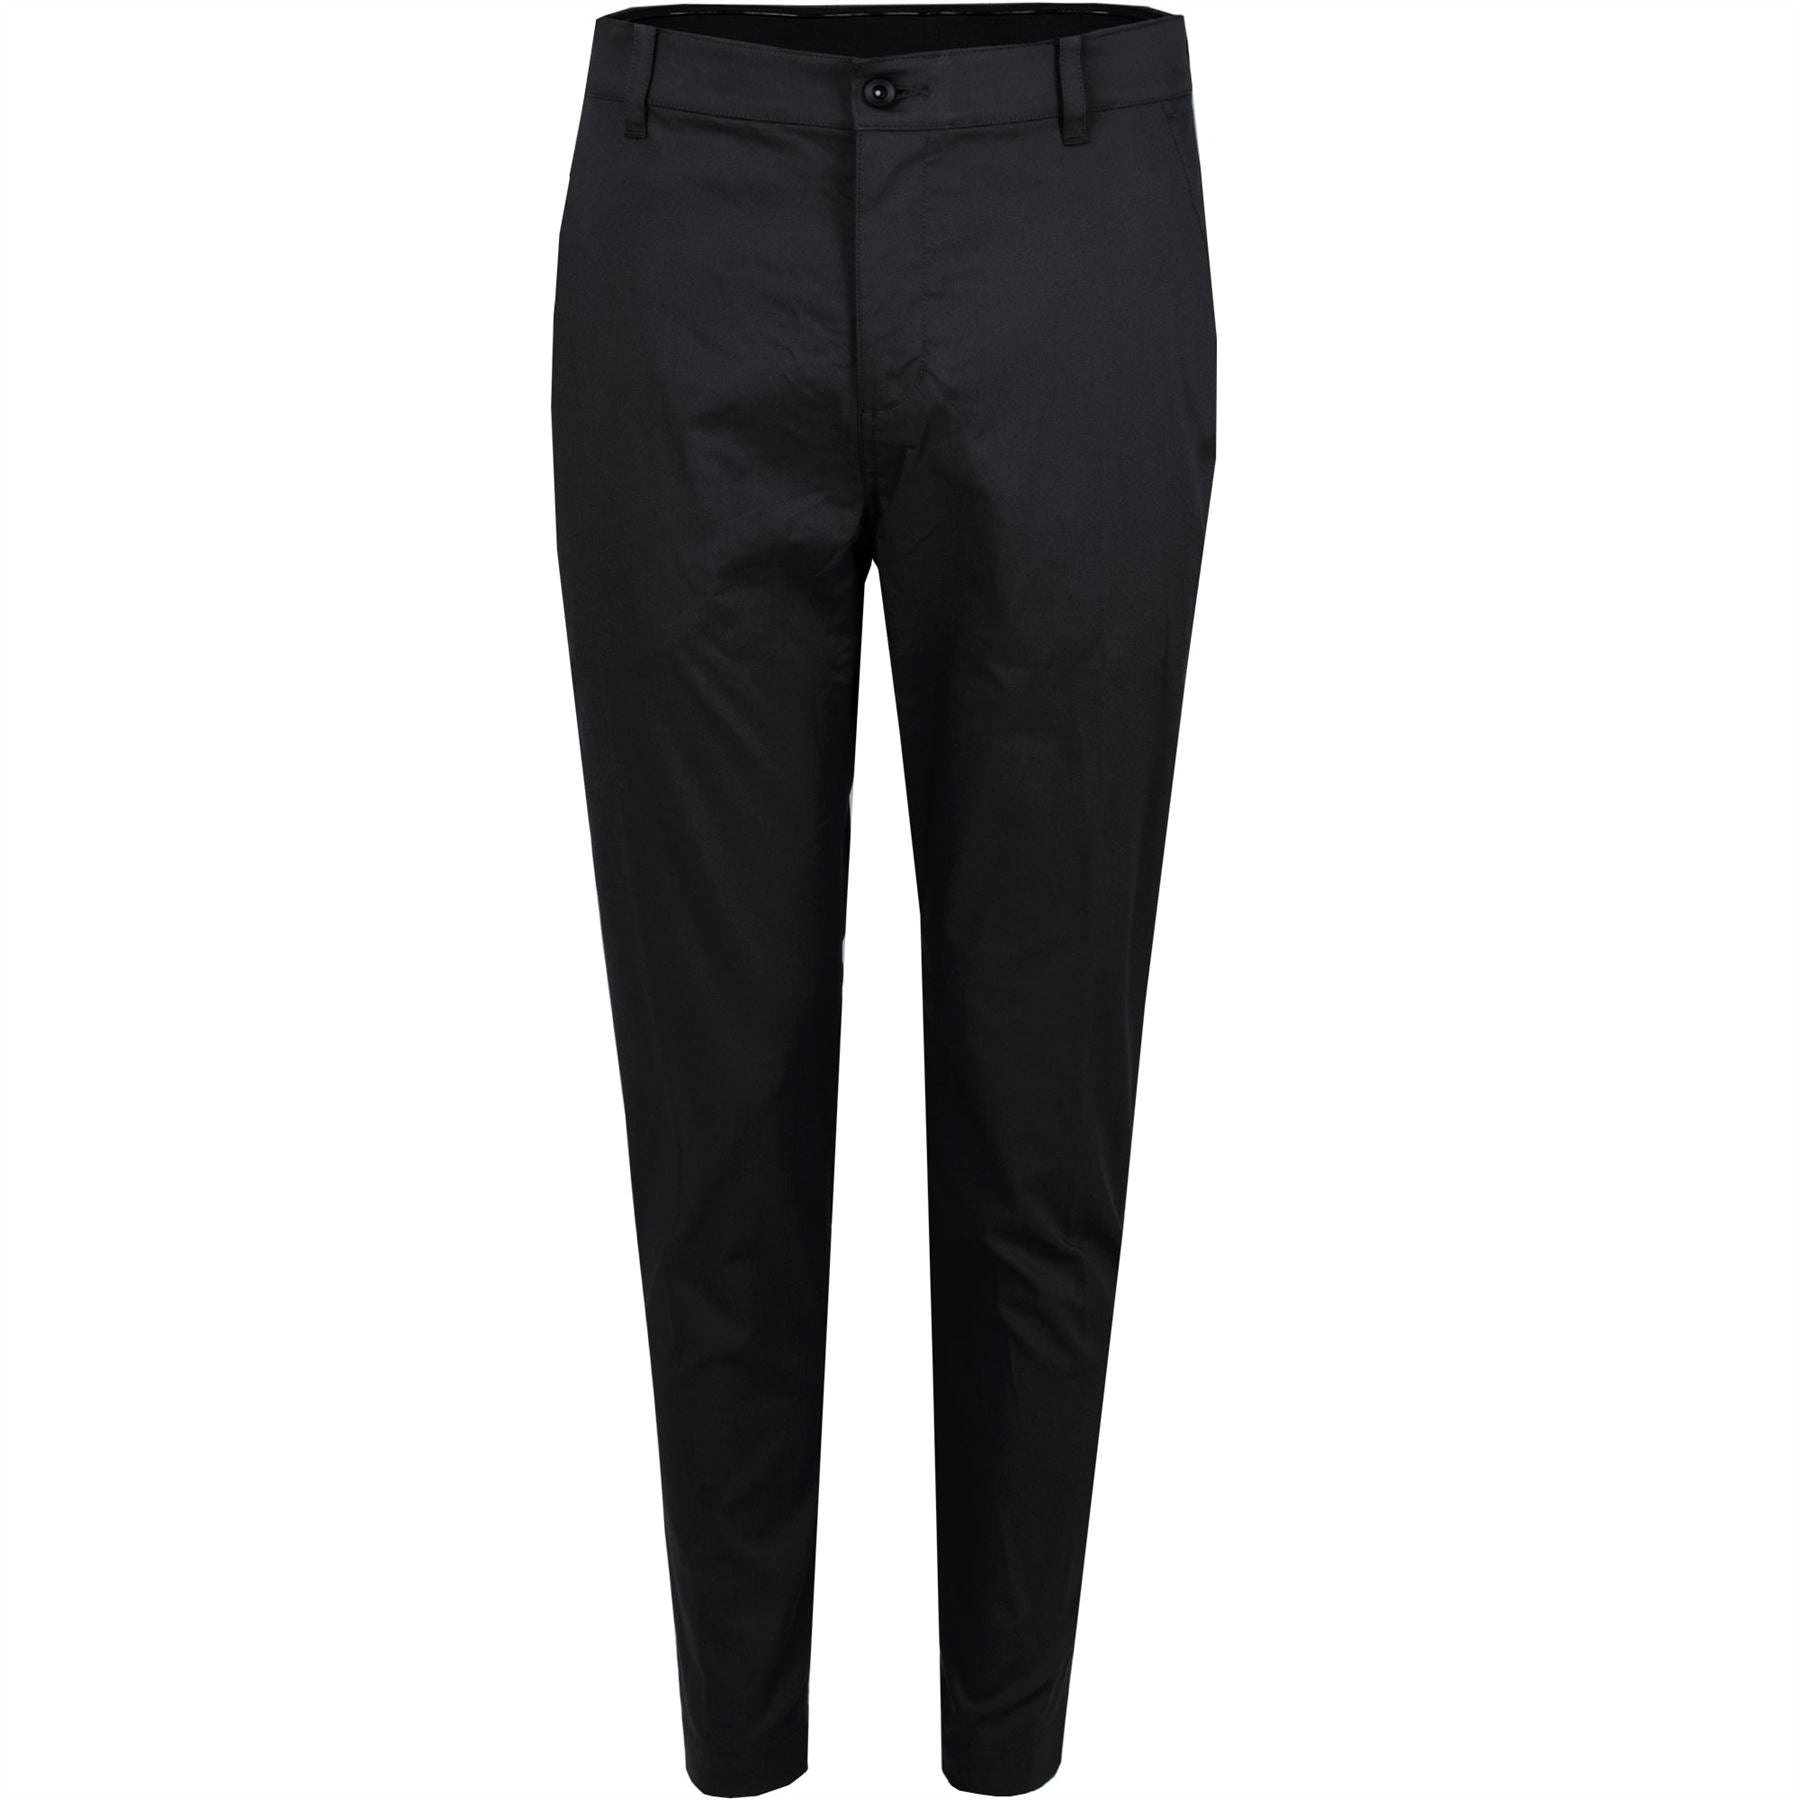 Black (Base) Striped Men Formal Linen Trouser, Regular Fit at Rs 355/piece  in Noida